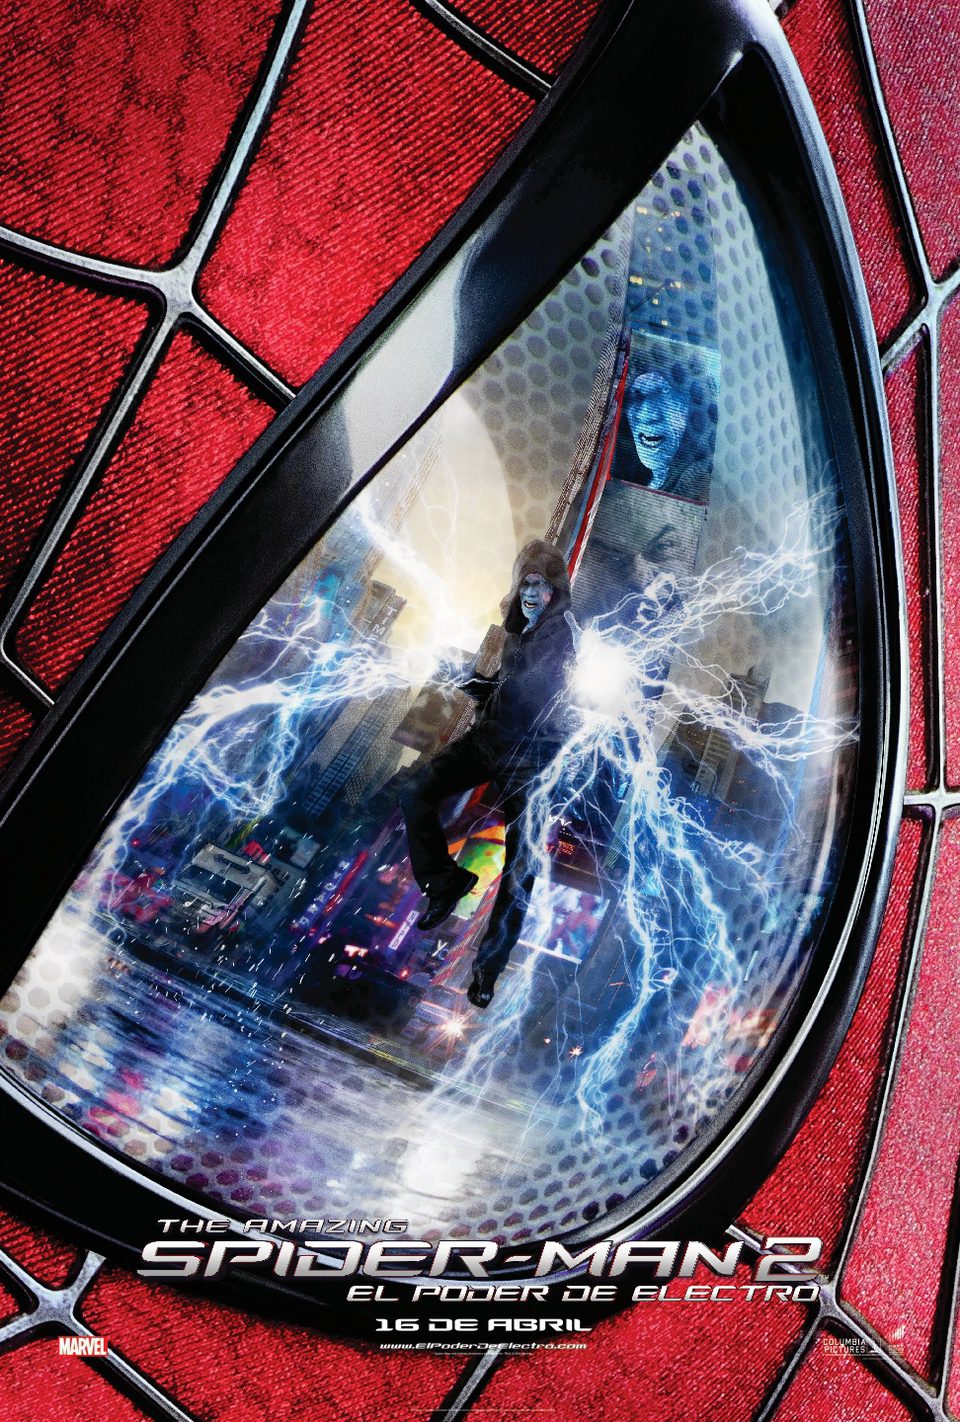 Cartel de The Amazing Spider-Man 2: El poder de Electro - España 2